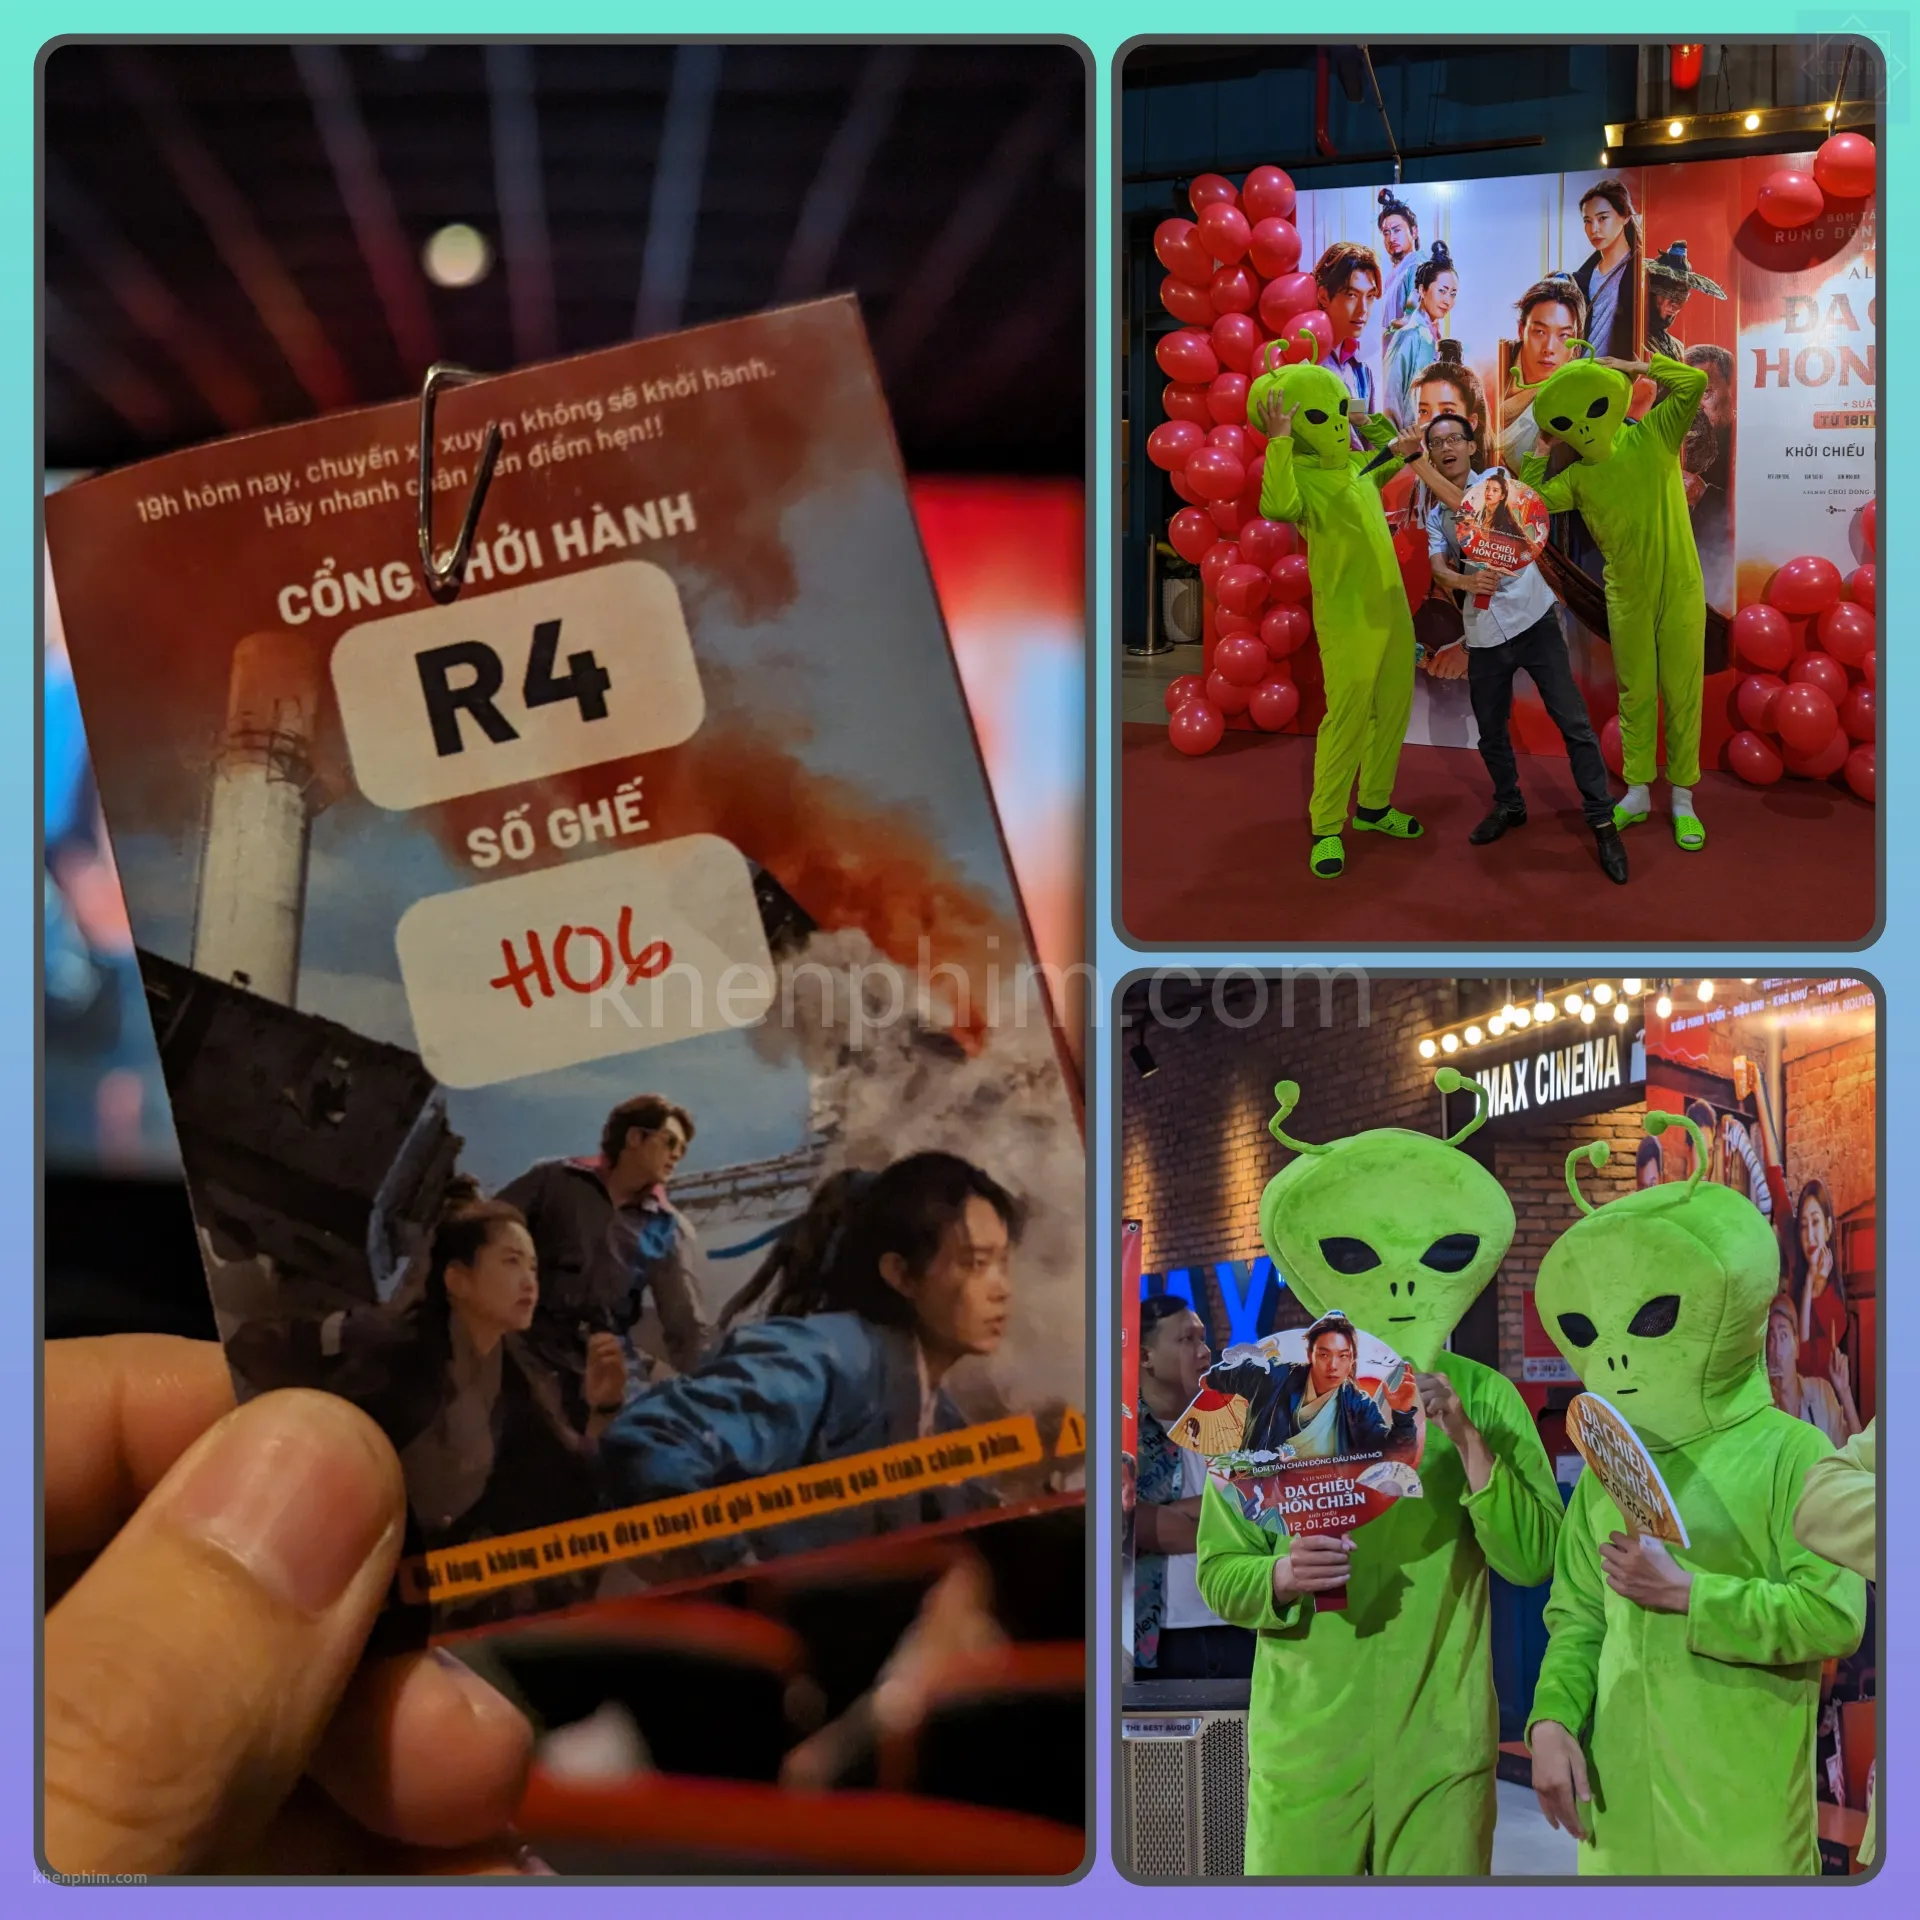 Vé xem phim Alienoid 2 tại sự kiện ra mắt phim tối ngày 8/1